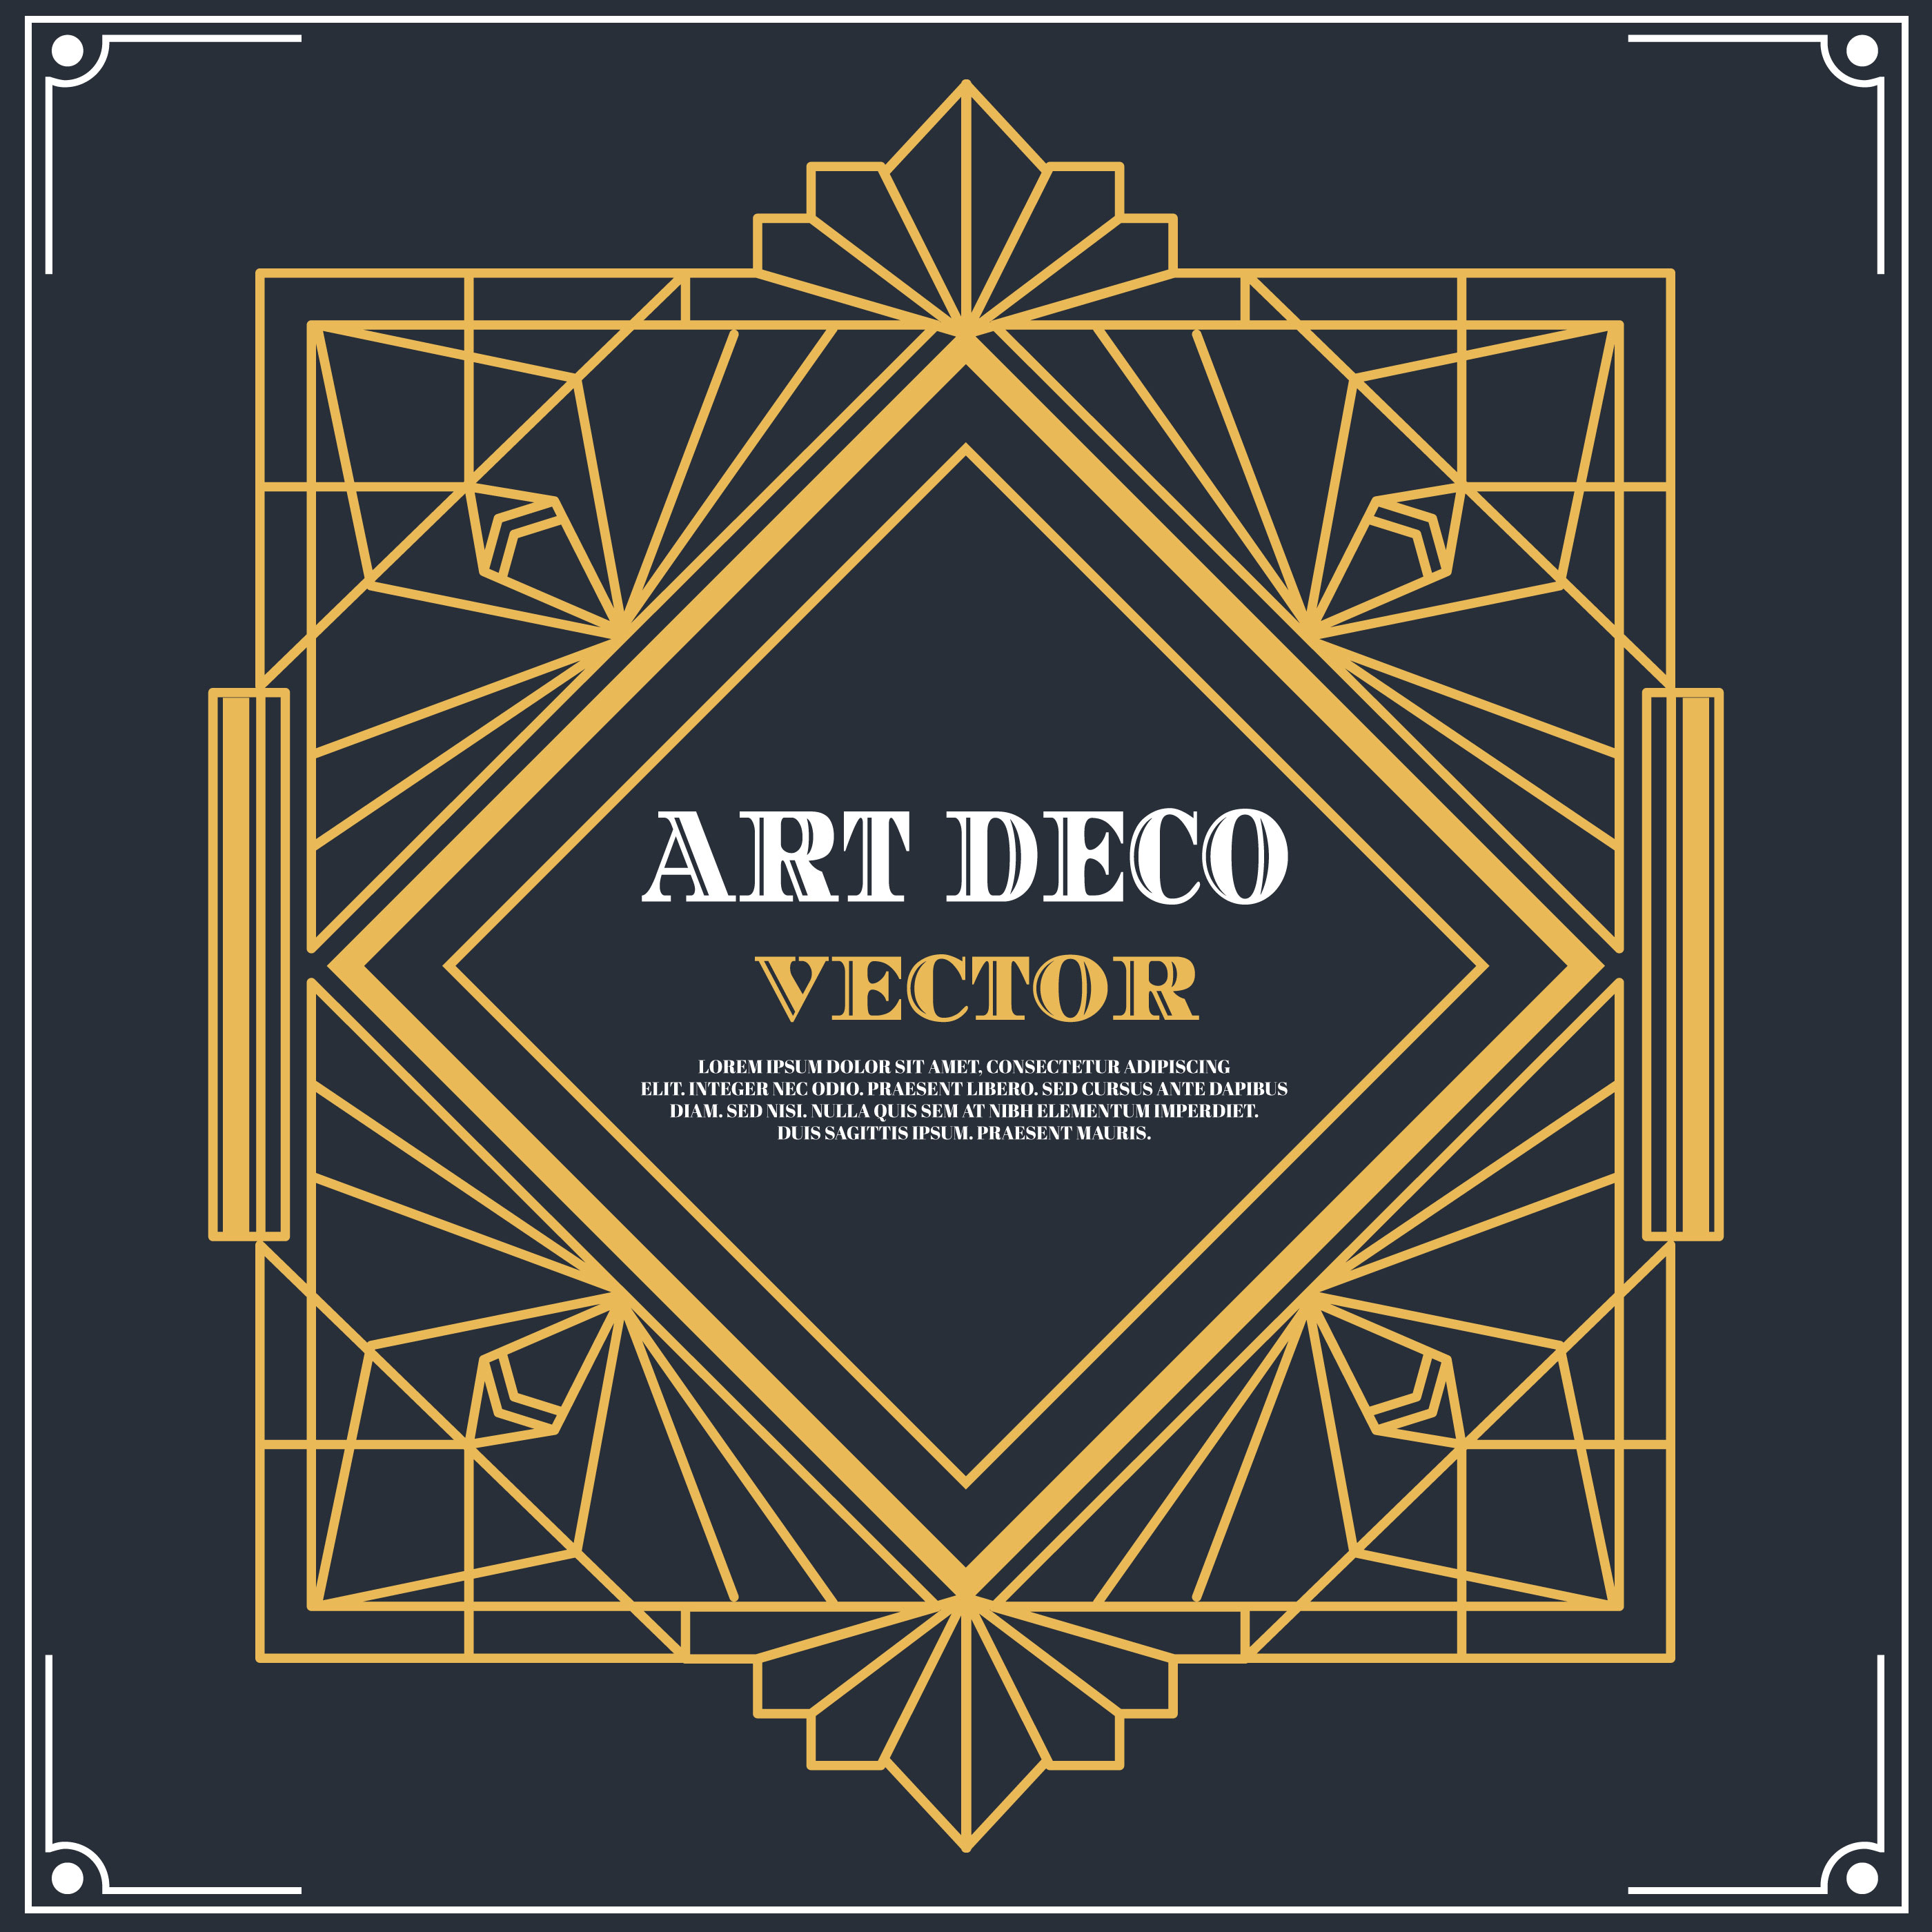 artwork-labels-art-deco-label-vector-download-free-vectors-clipart